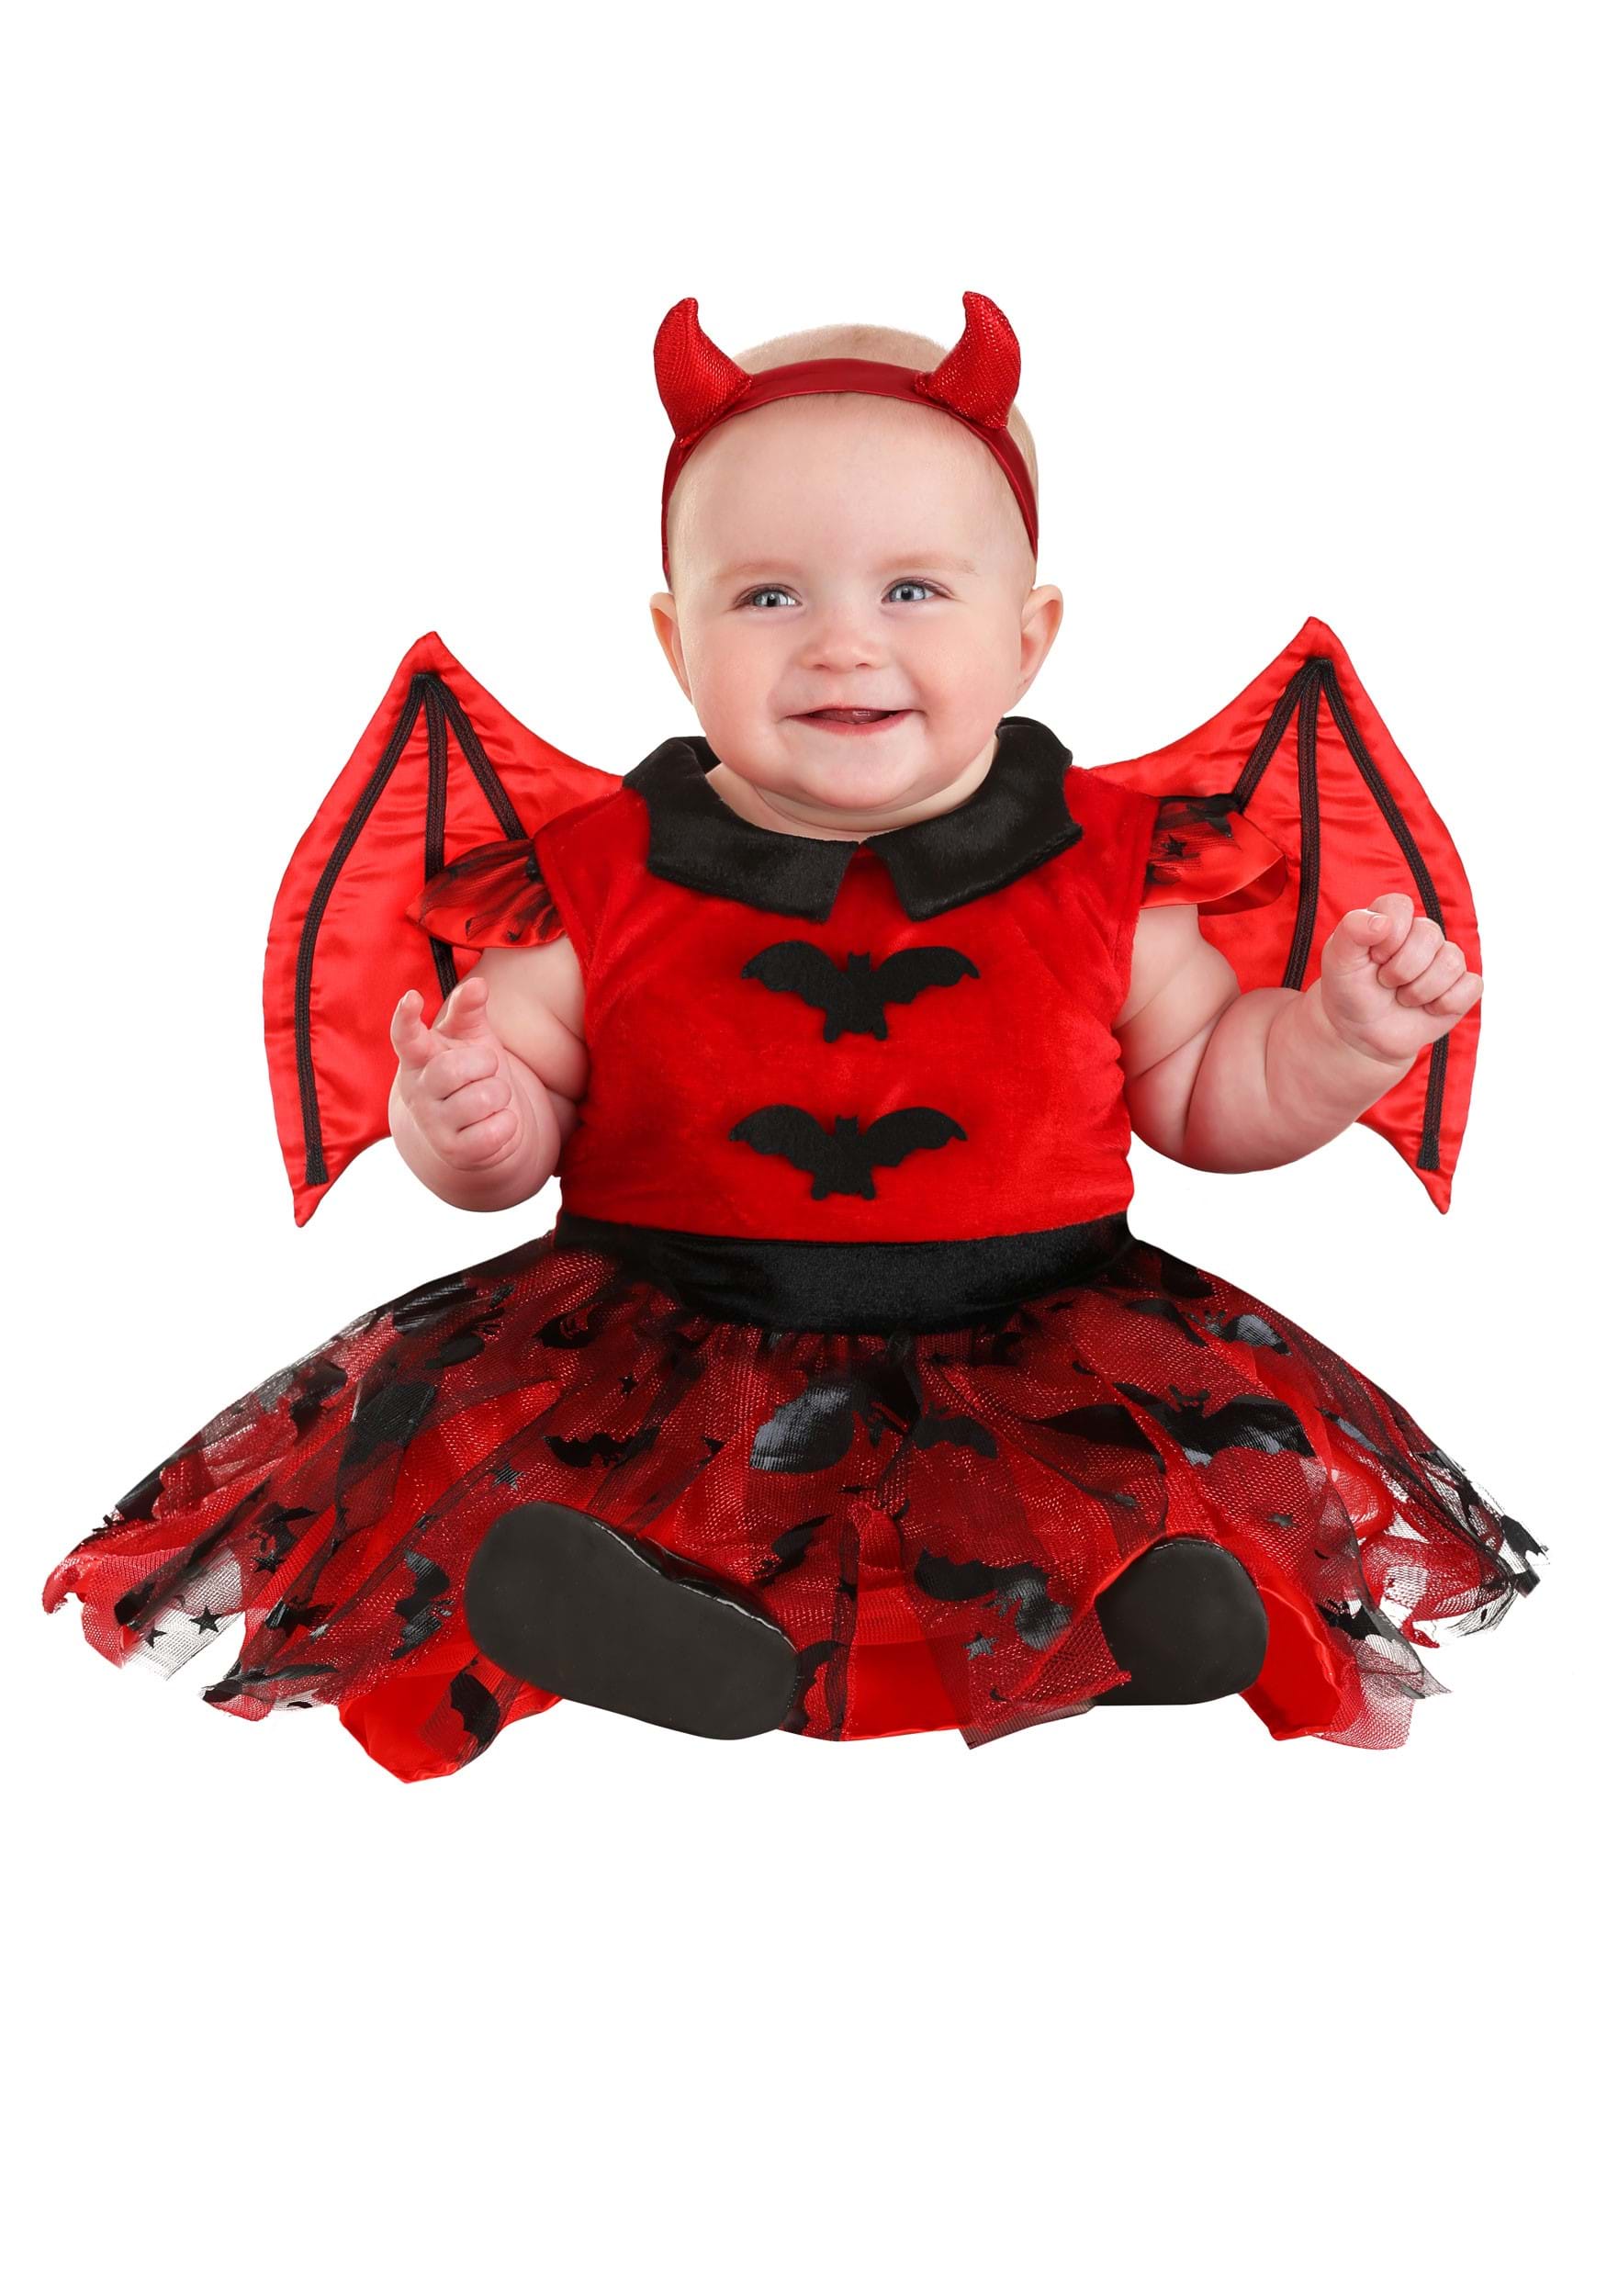 Adorable disfraz de vestido de diablo infantil Multicolor